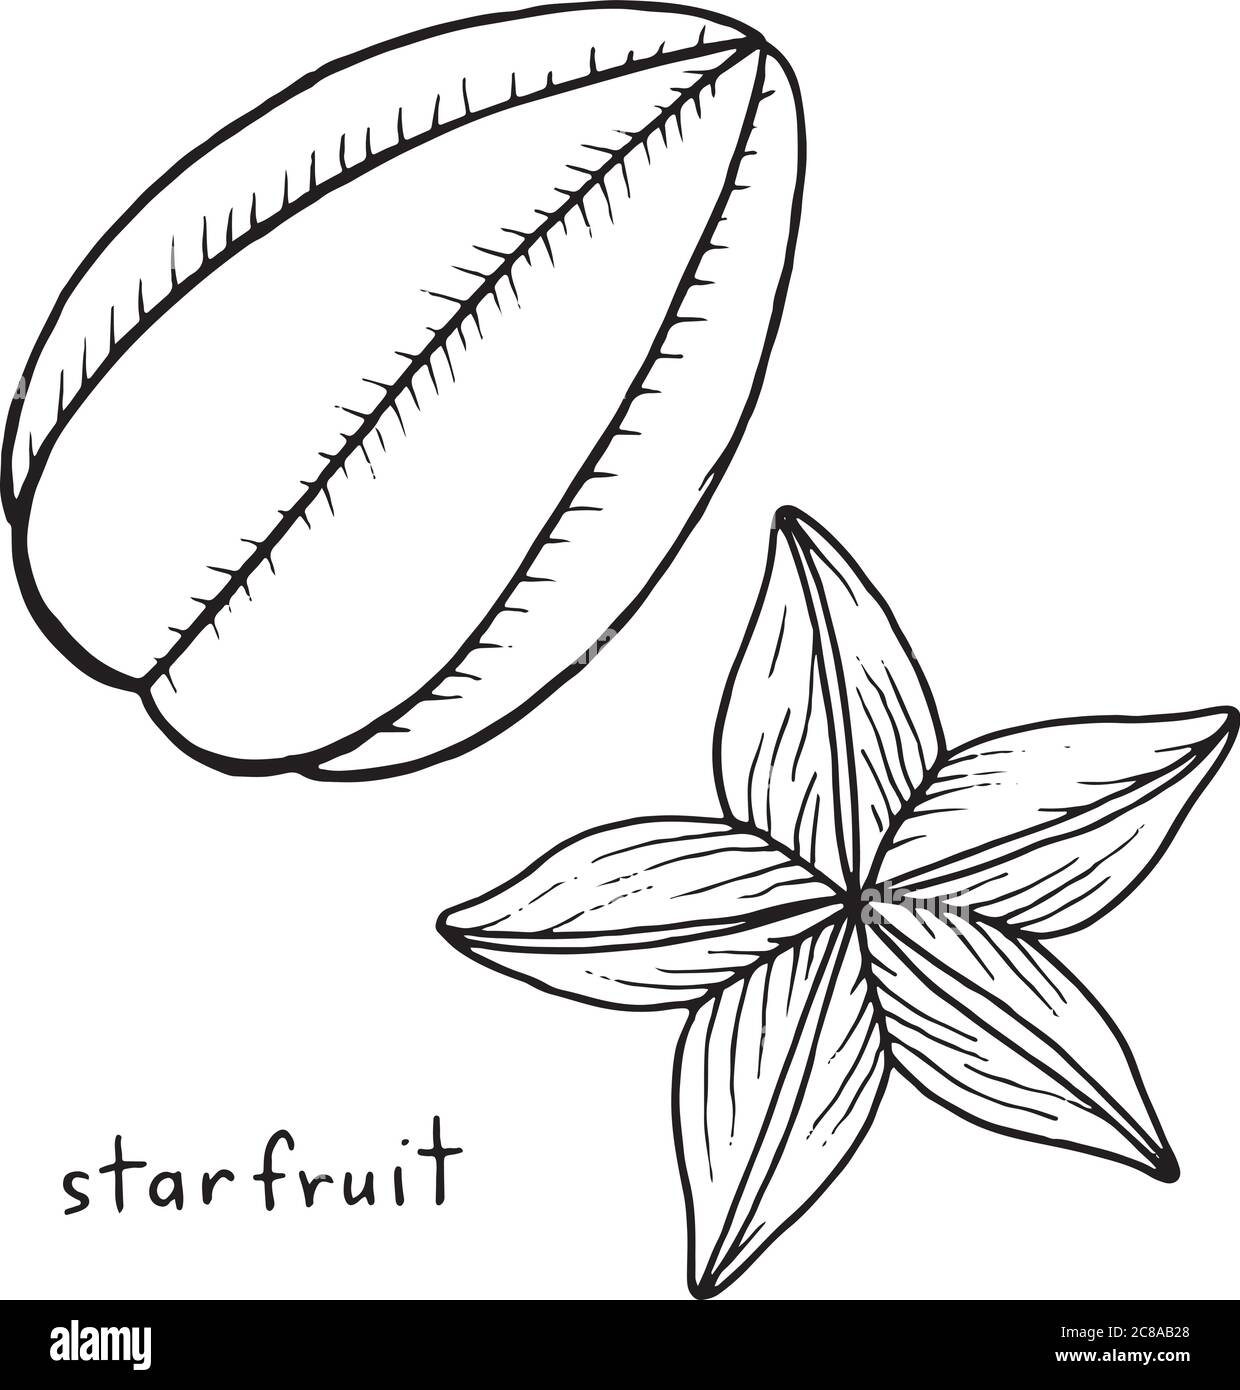 Sternfrucht Stock Vektorgrafiken kaufen   Alamy